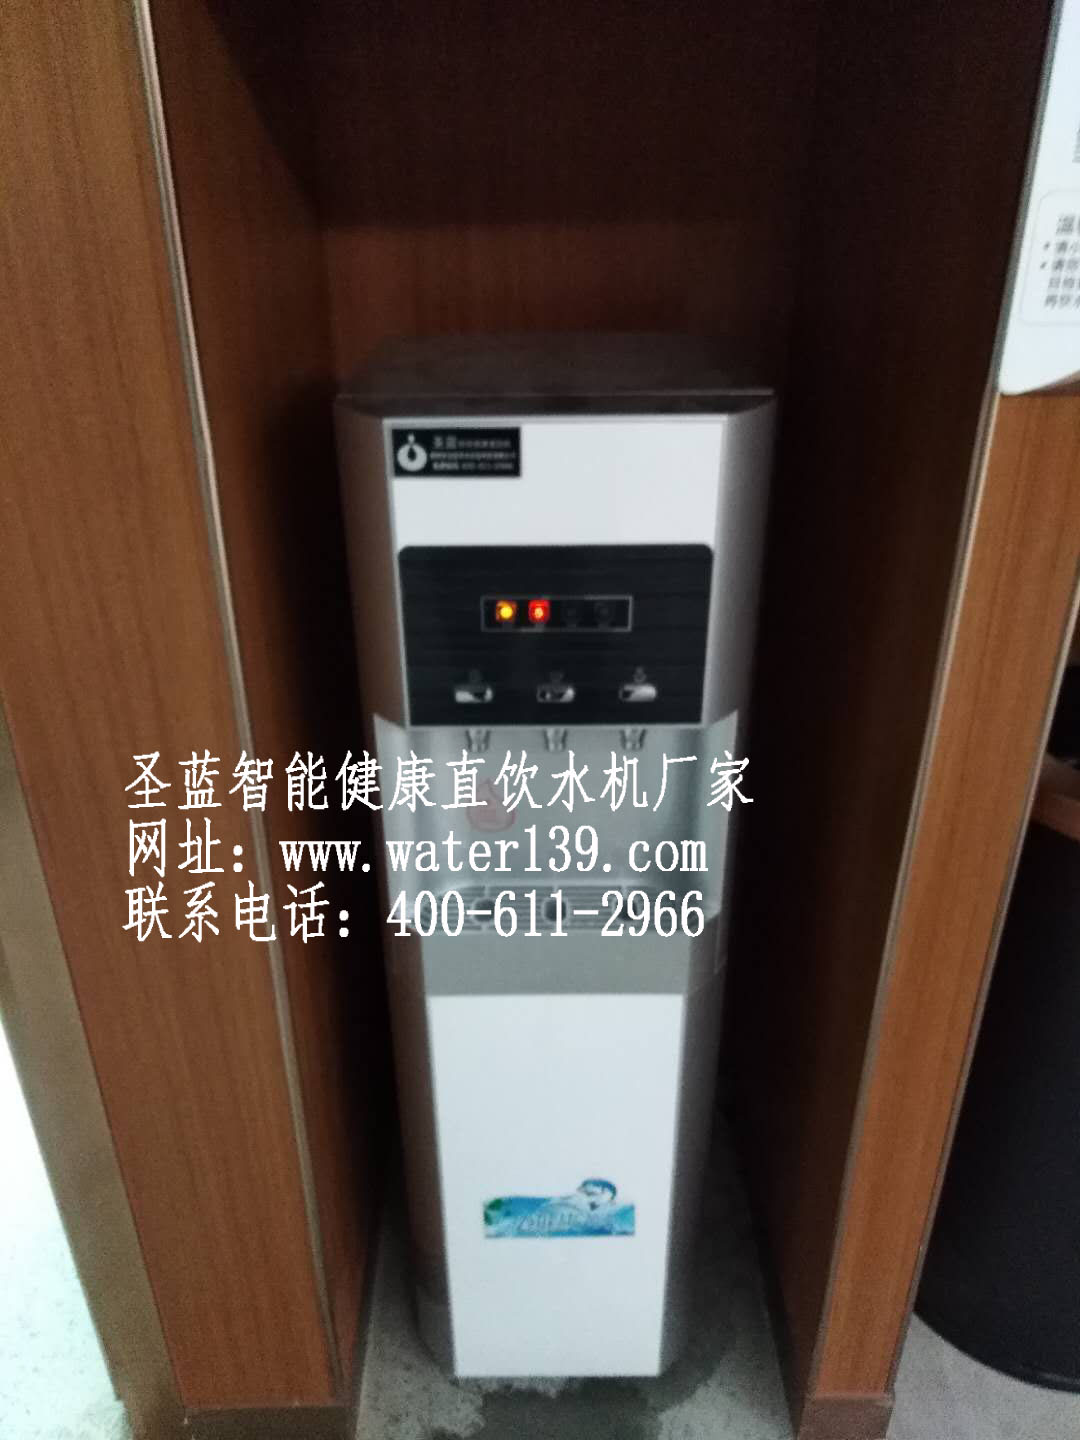 广州办公室直饮水机安装怎么选择适合的呢？